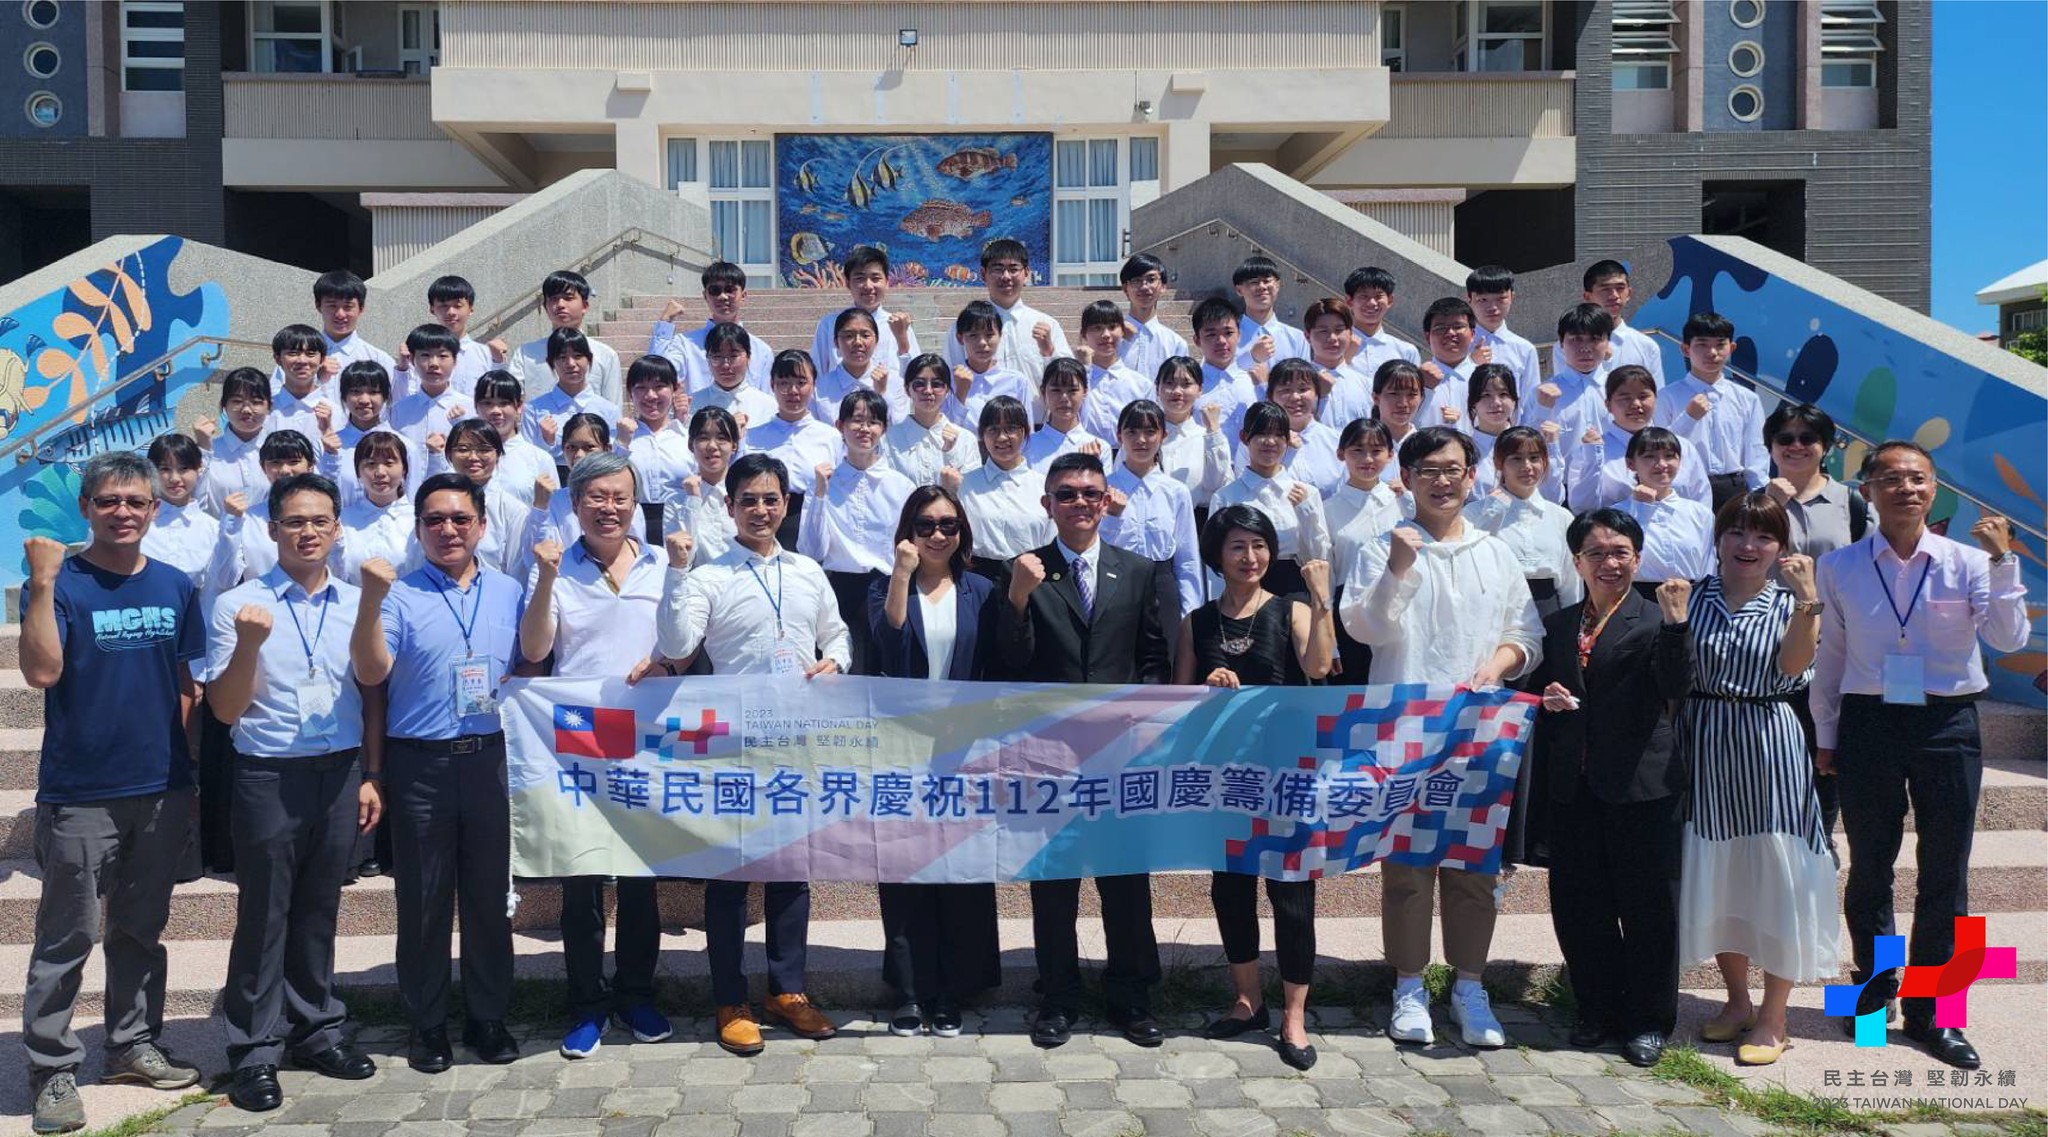 Dàn hợp xướng trường THPT Ma-gong, Bành Hồ sẽ đảm nhận lĩnh xướng Quốc ca tại Lễ Quốc khánh năm nay. (Ảnh: Lấy từ Facebook rocbirthday)